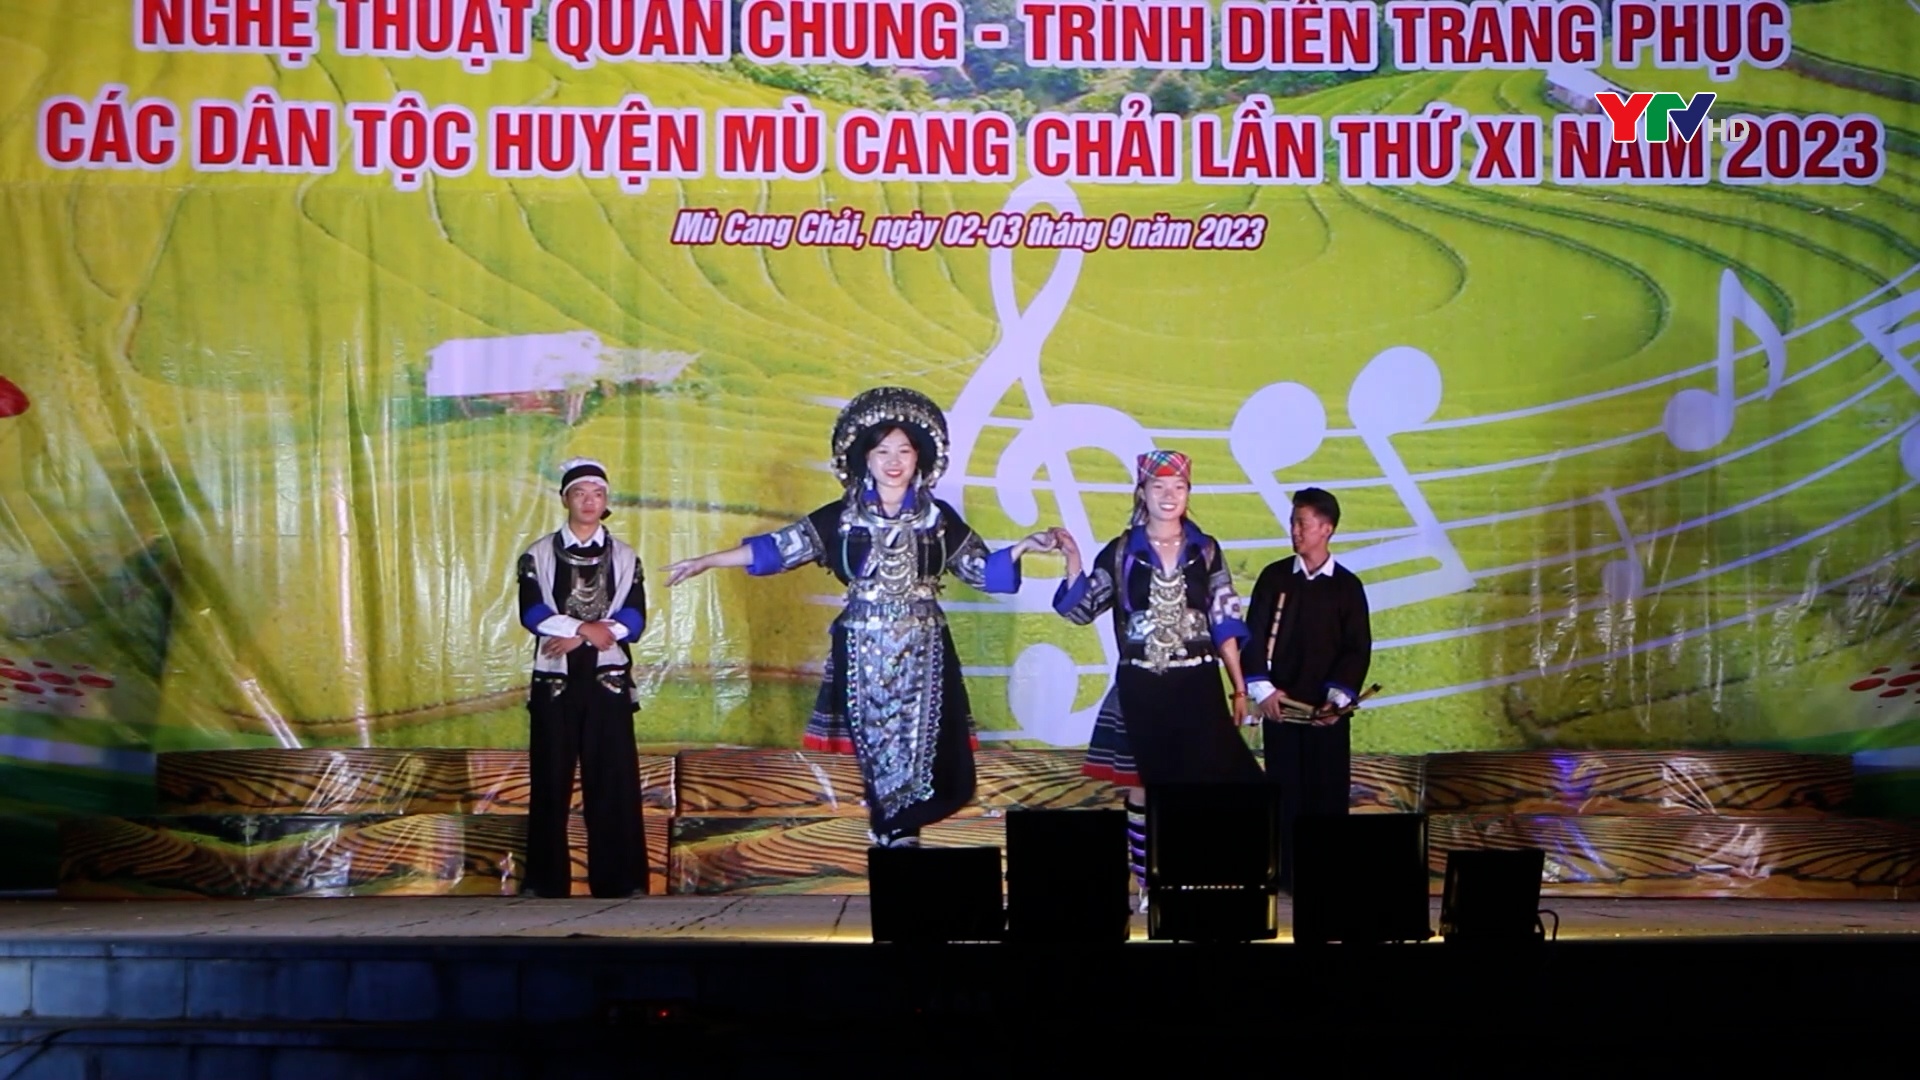 Hội diễn Nghệ thuật quần chúng, trình diễn trang phục các dân tộc huyện Mù Cang Chải lần thứ XI, năm 2023